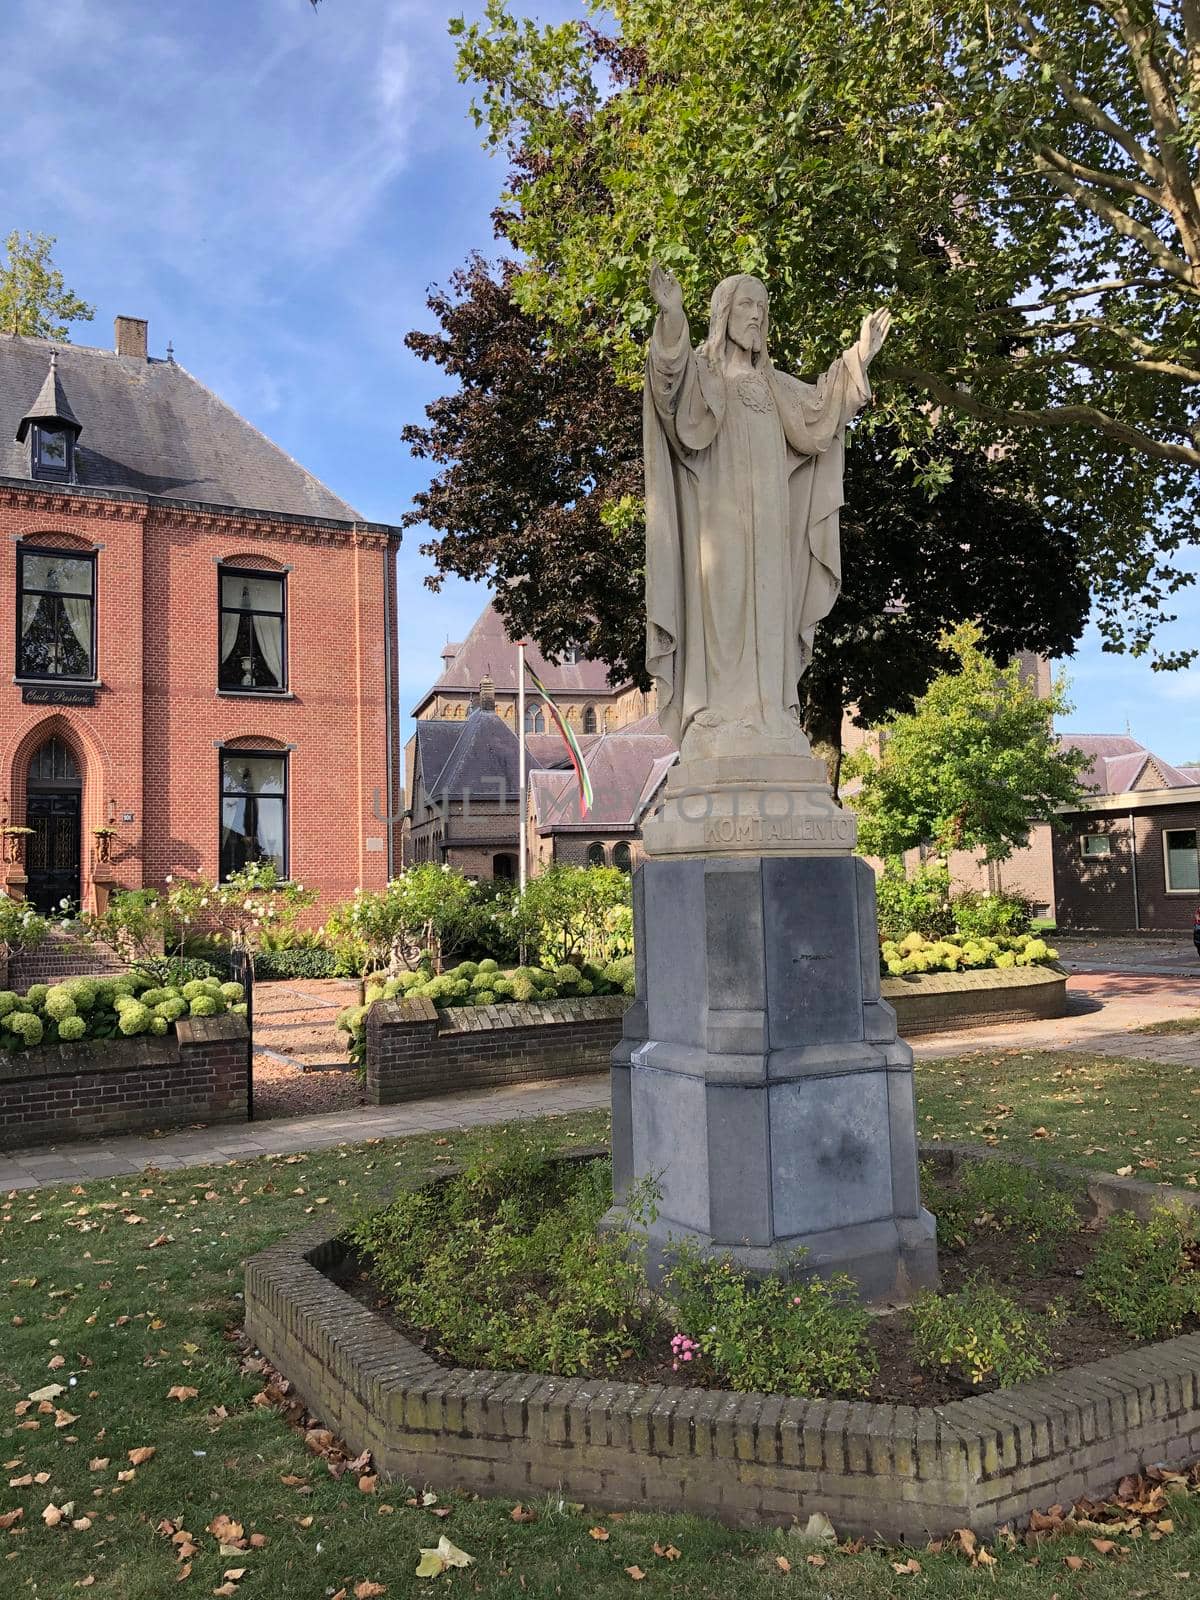 Jesus statue in Millingen aan de Rijn, The Netherlands